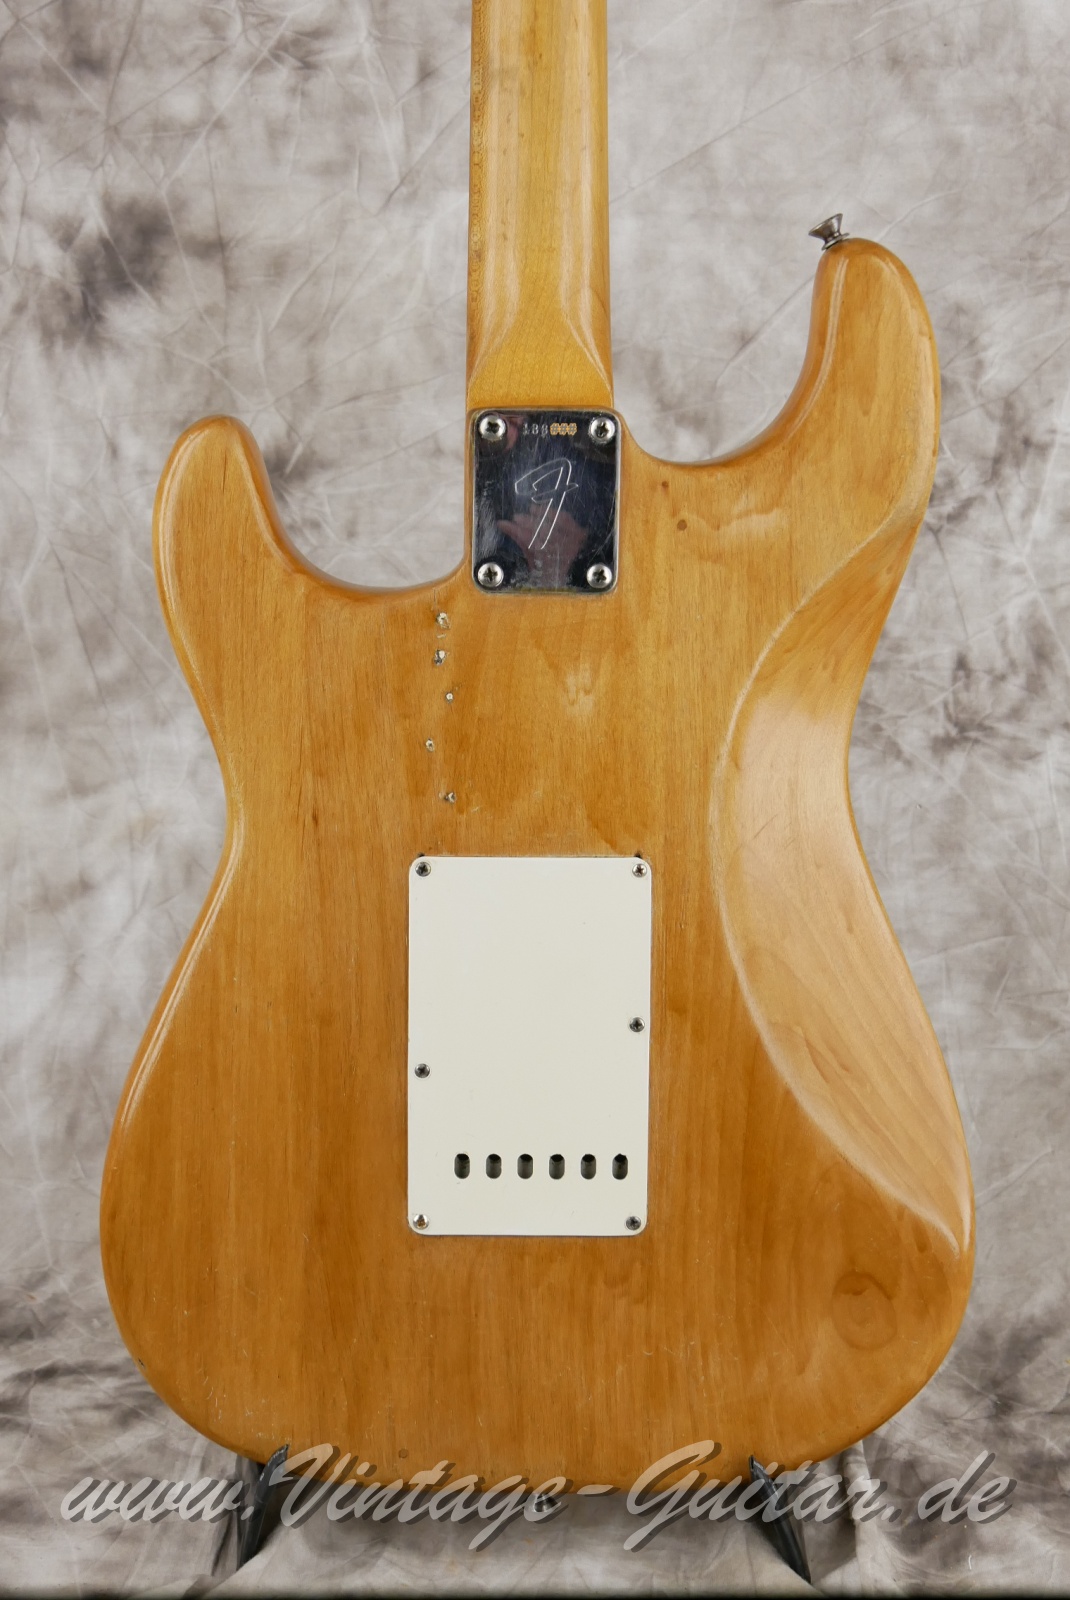 Fender_Stratocaster_body_stripped_1966-008.JPG